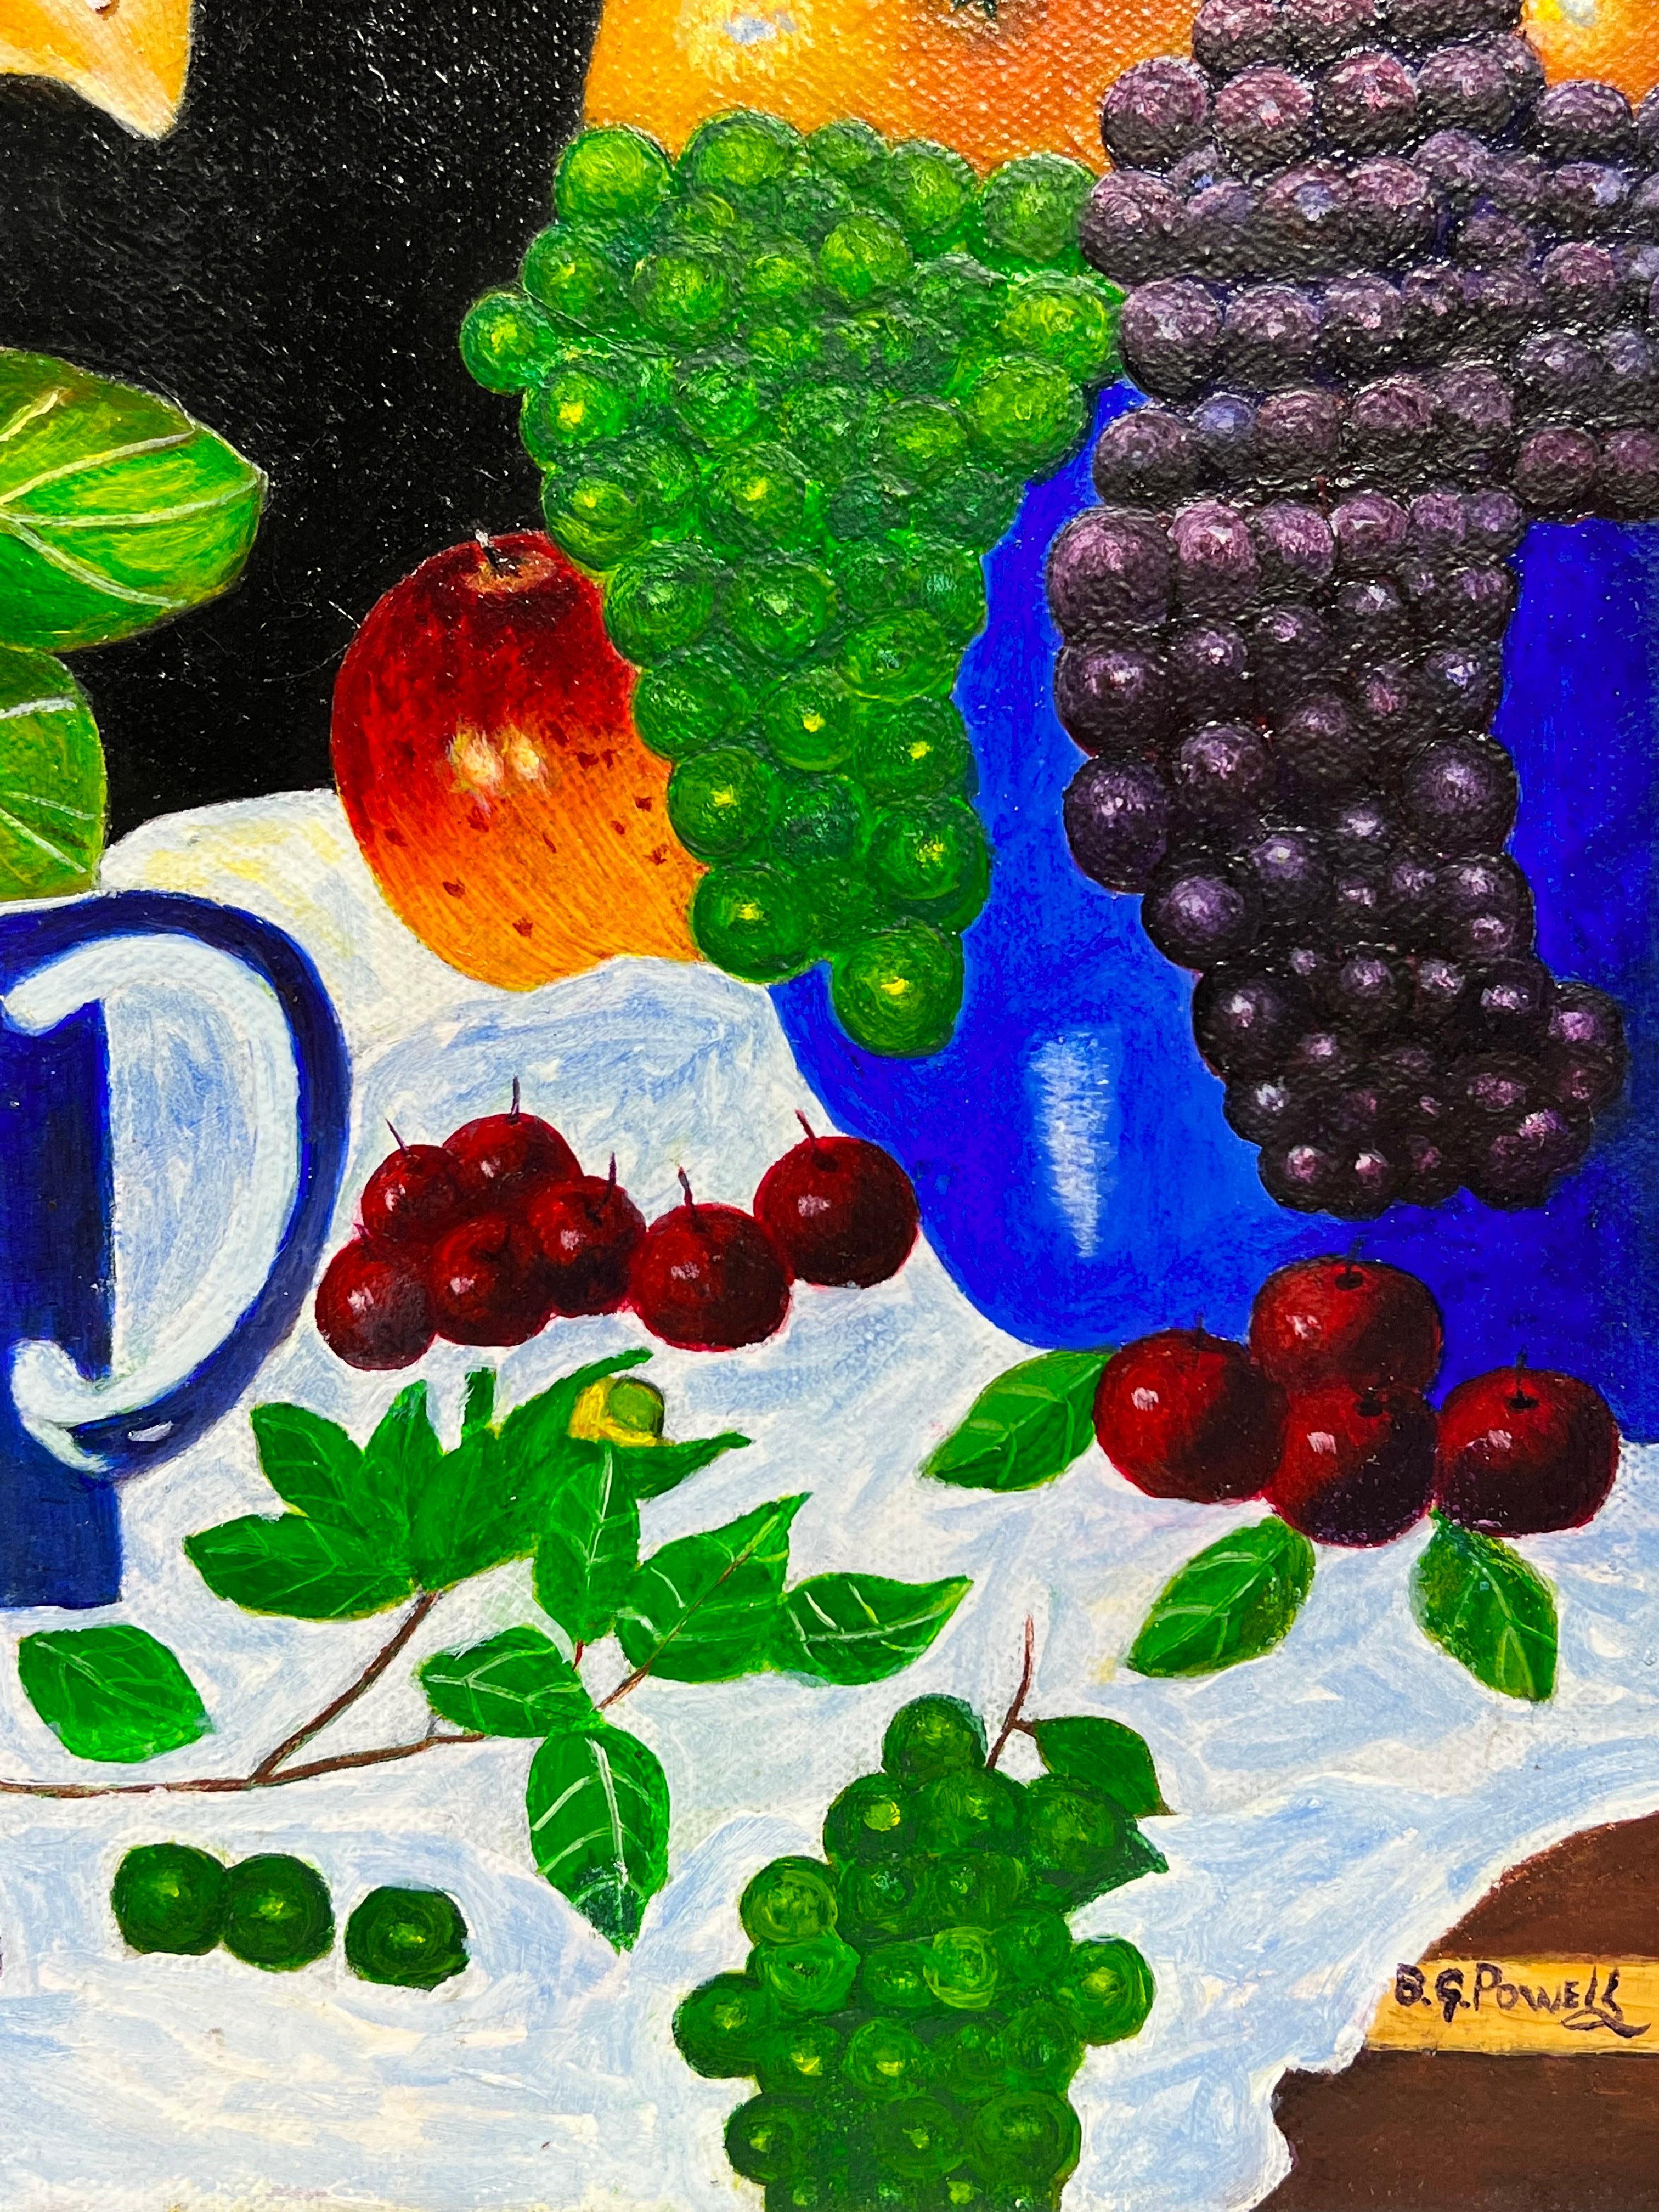 Nature morte abstraite contemporaine colorée à l'huile Fruit & Flowers - Moderne Painting par Ben Powell